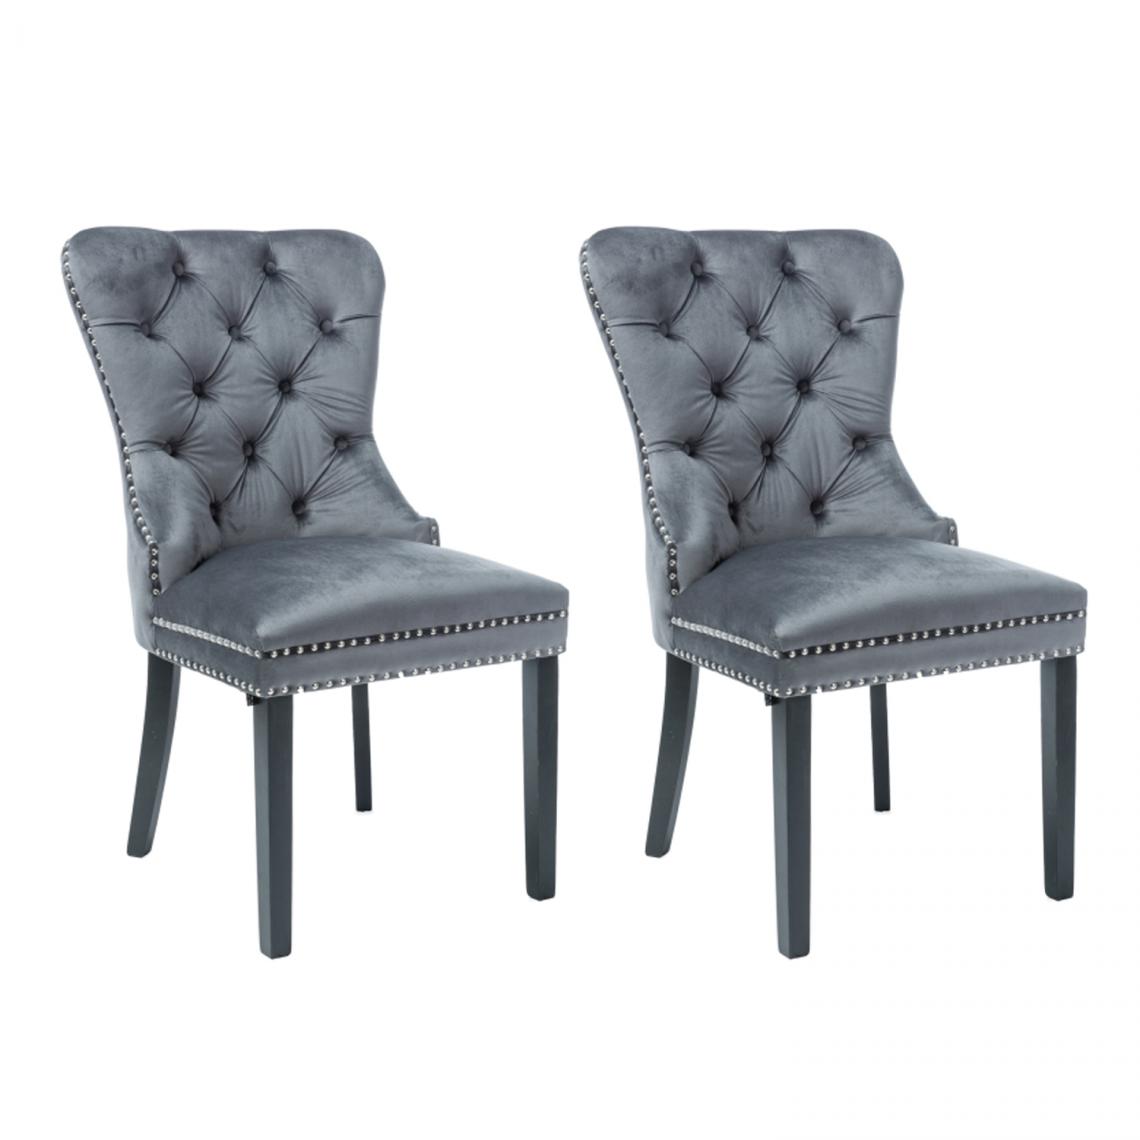 Hucoco - AMANDI - Lot de 2 chaises en tissu velouté -98x56x45 cm - Structure en bois - Style glamour - Gris - Chaises